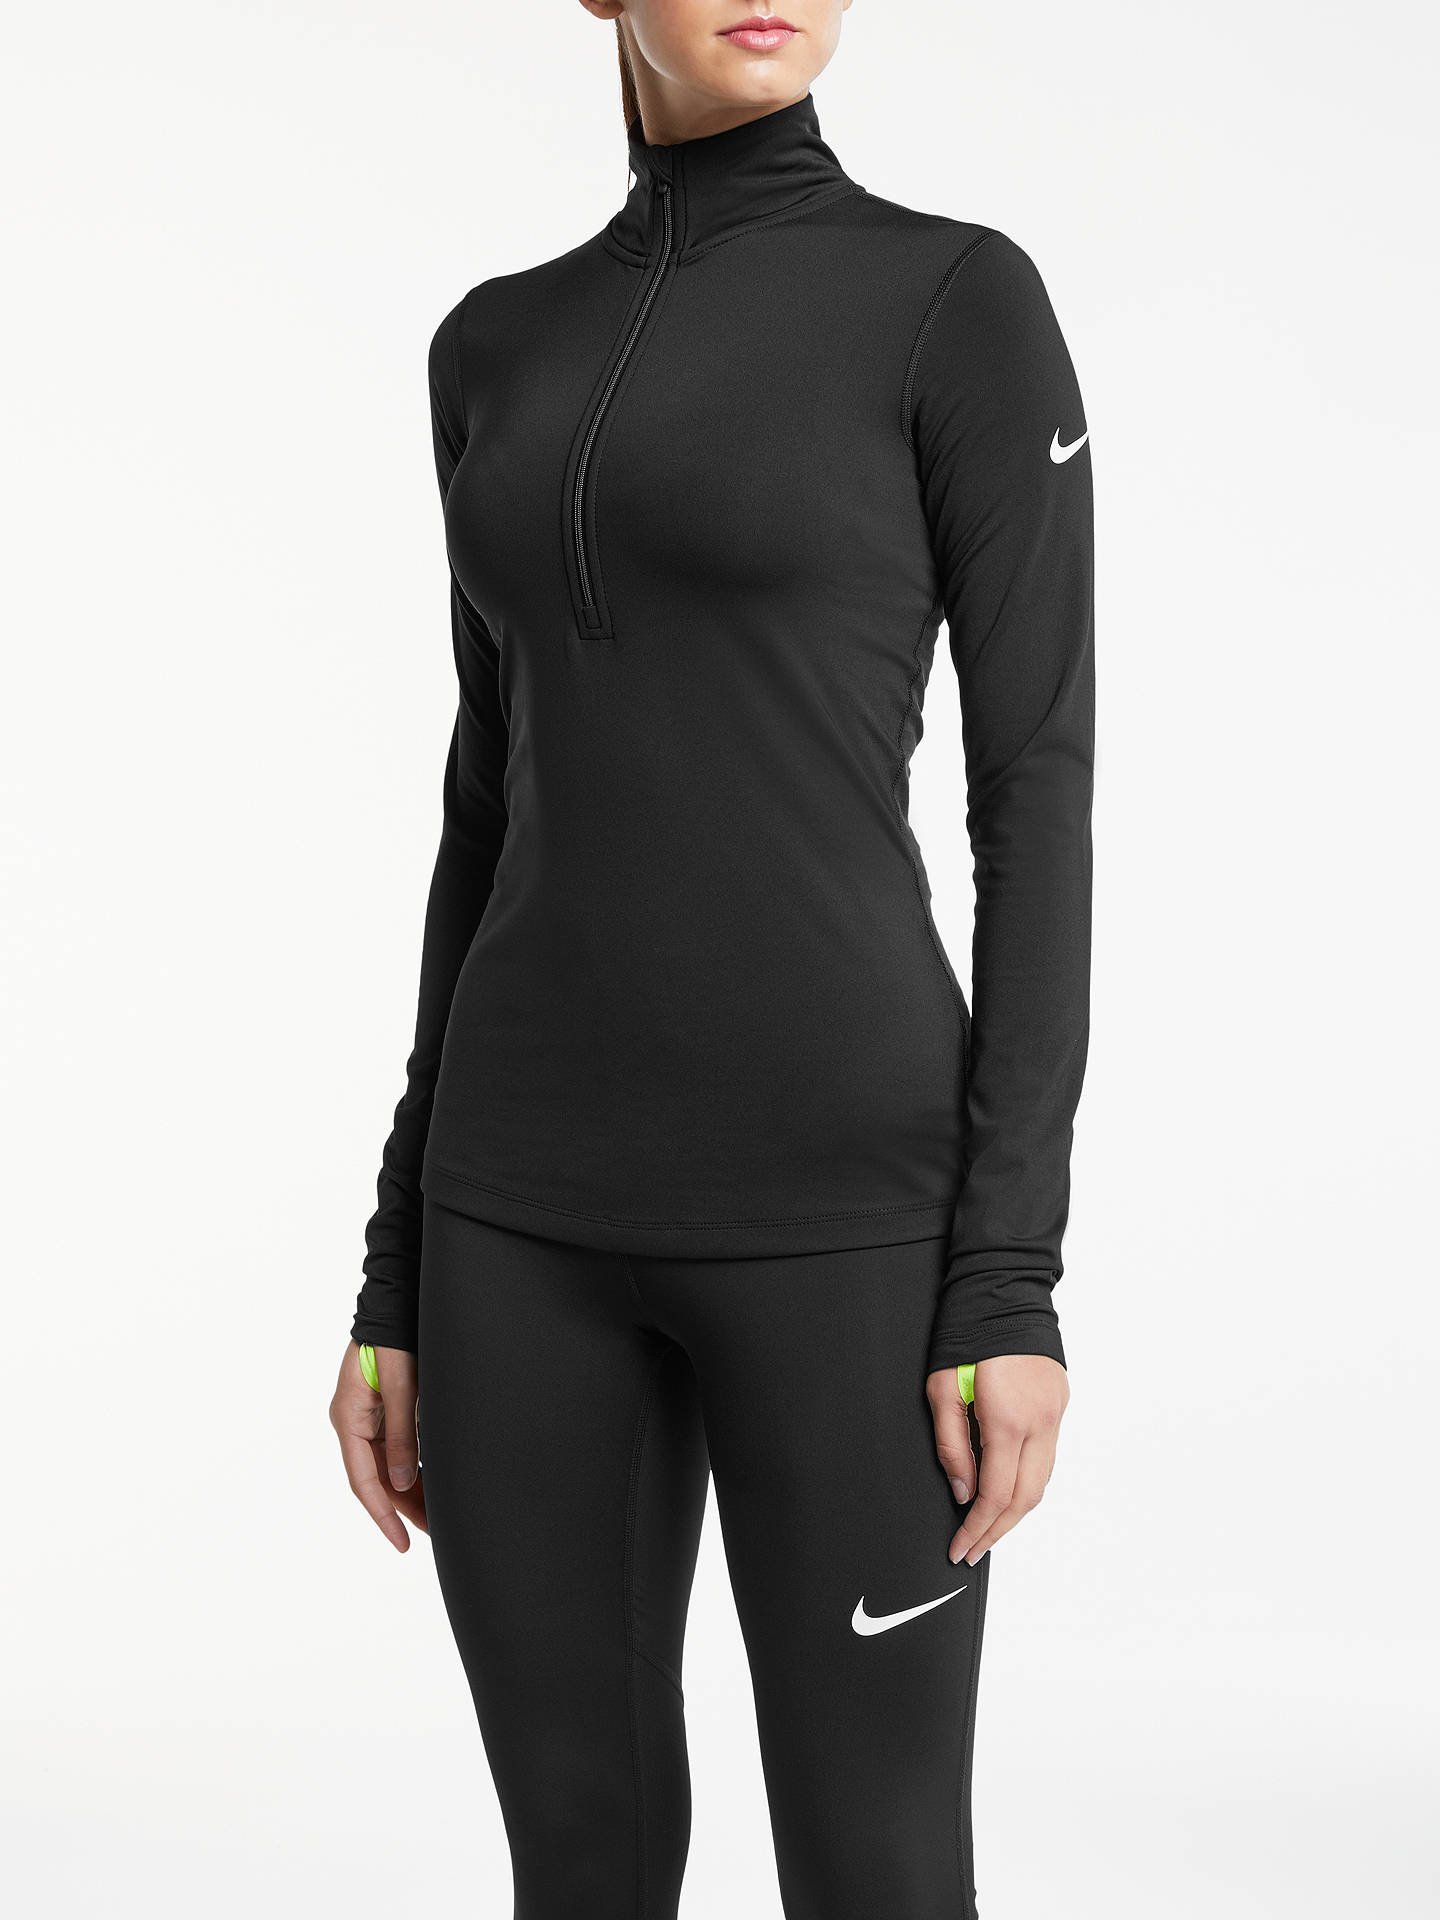 Nike Pro Warm Half Zip Training Top, Black at John Lewis & Partners